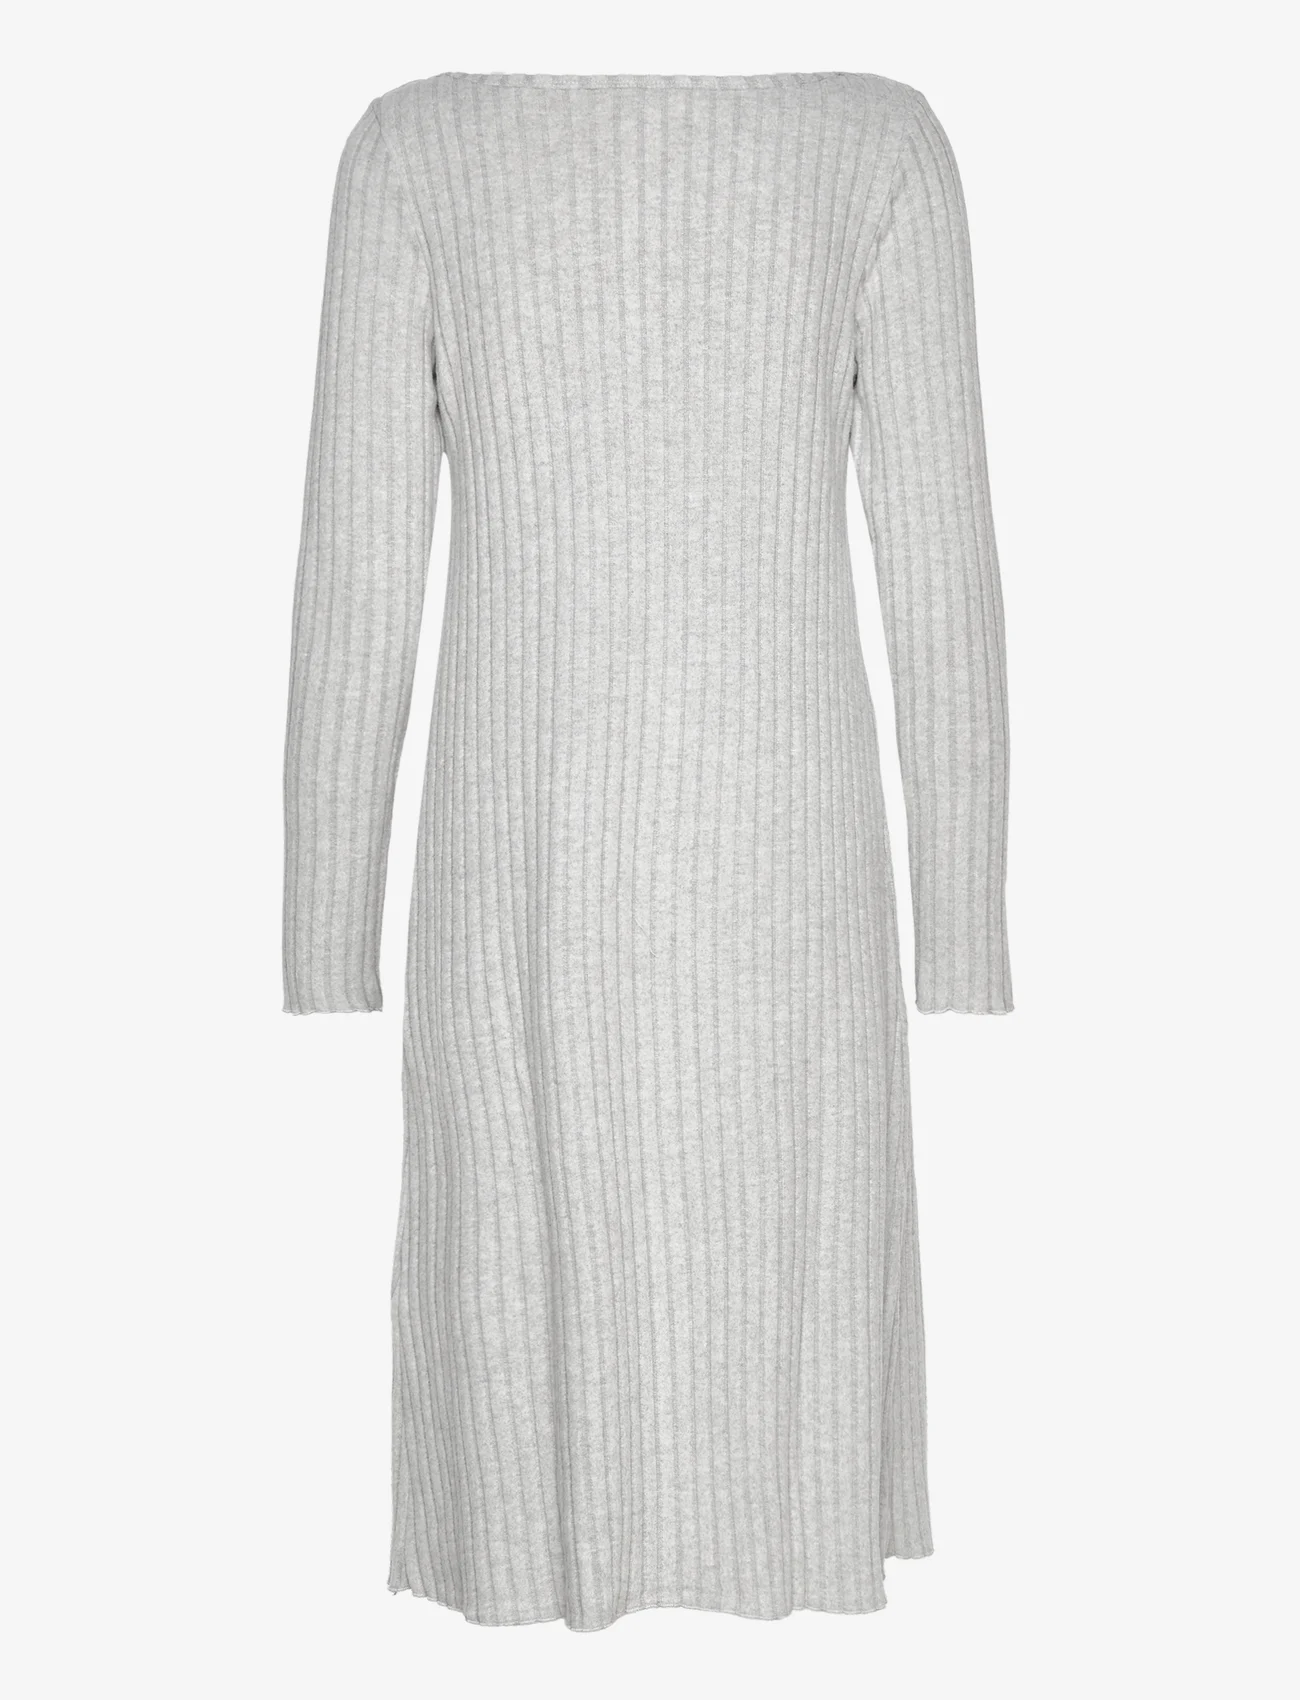 Sirup Copenhagen - Nairobi Dress - knitted dresses - grey melange - 1